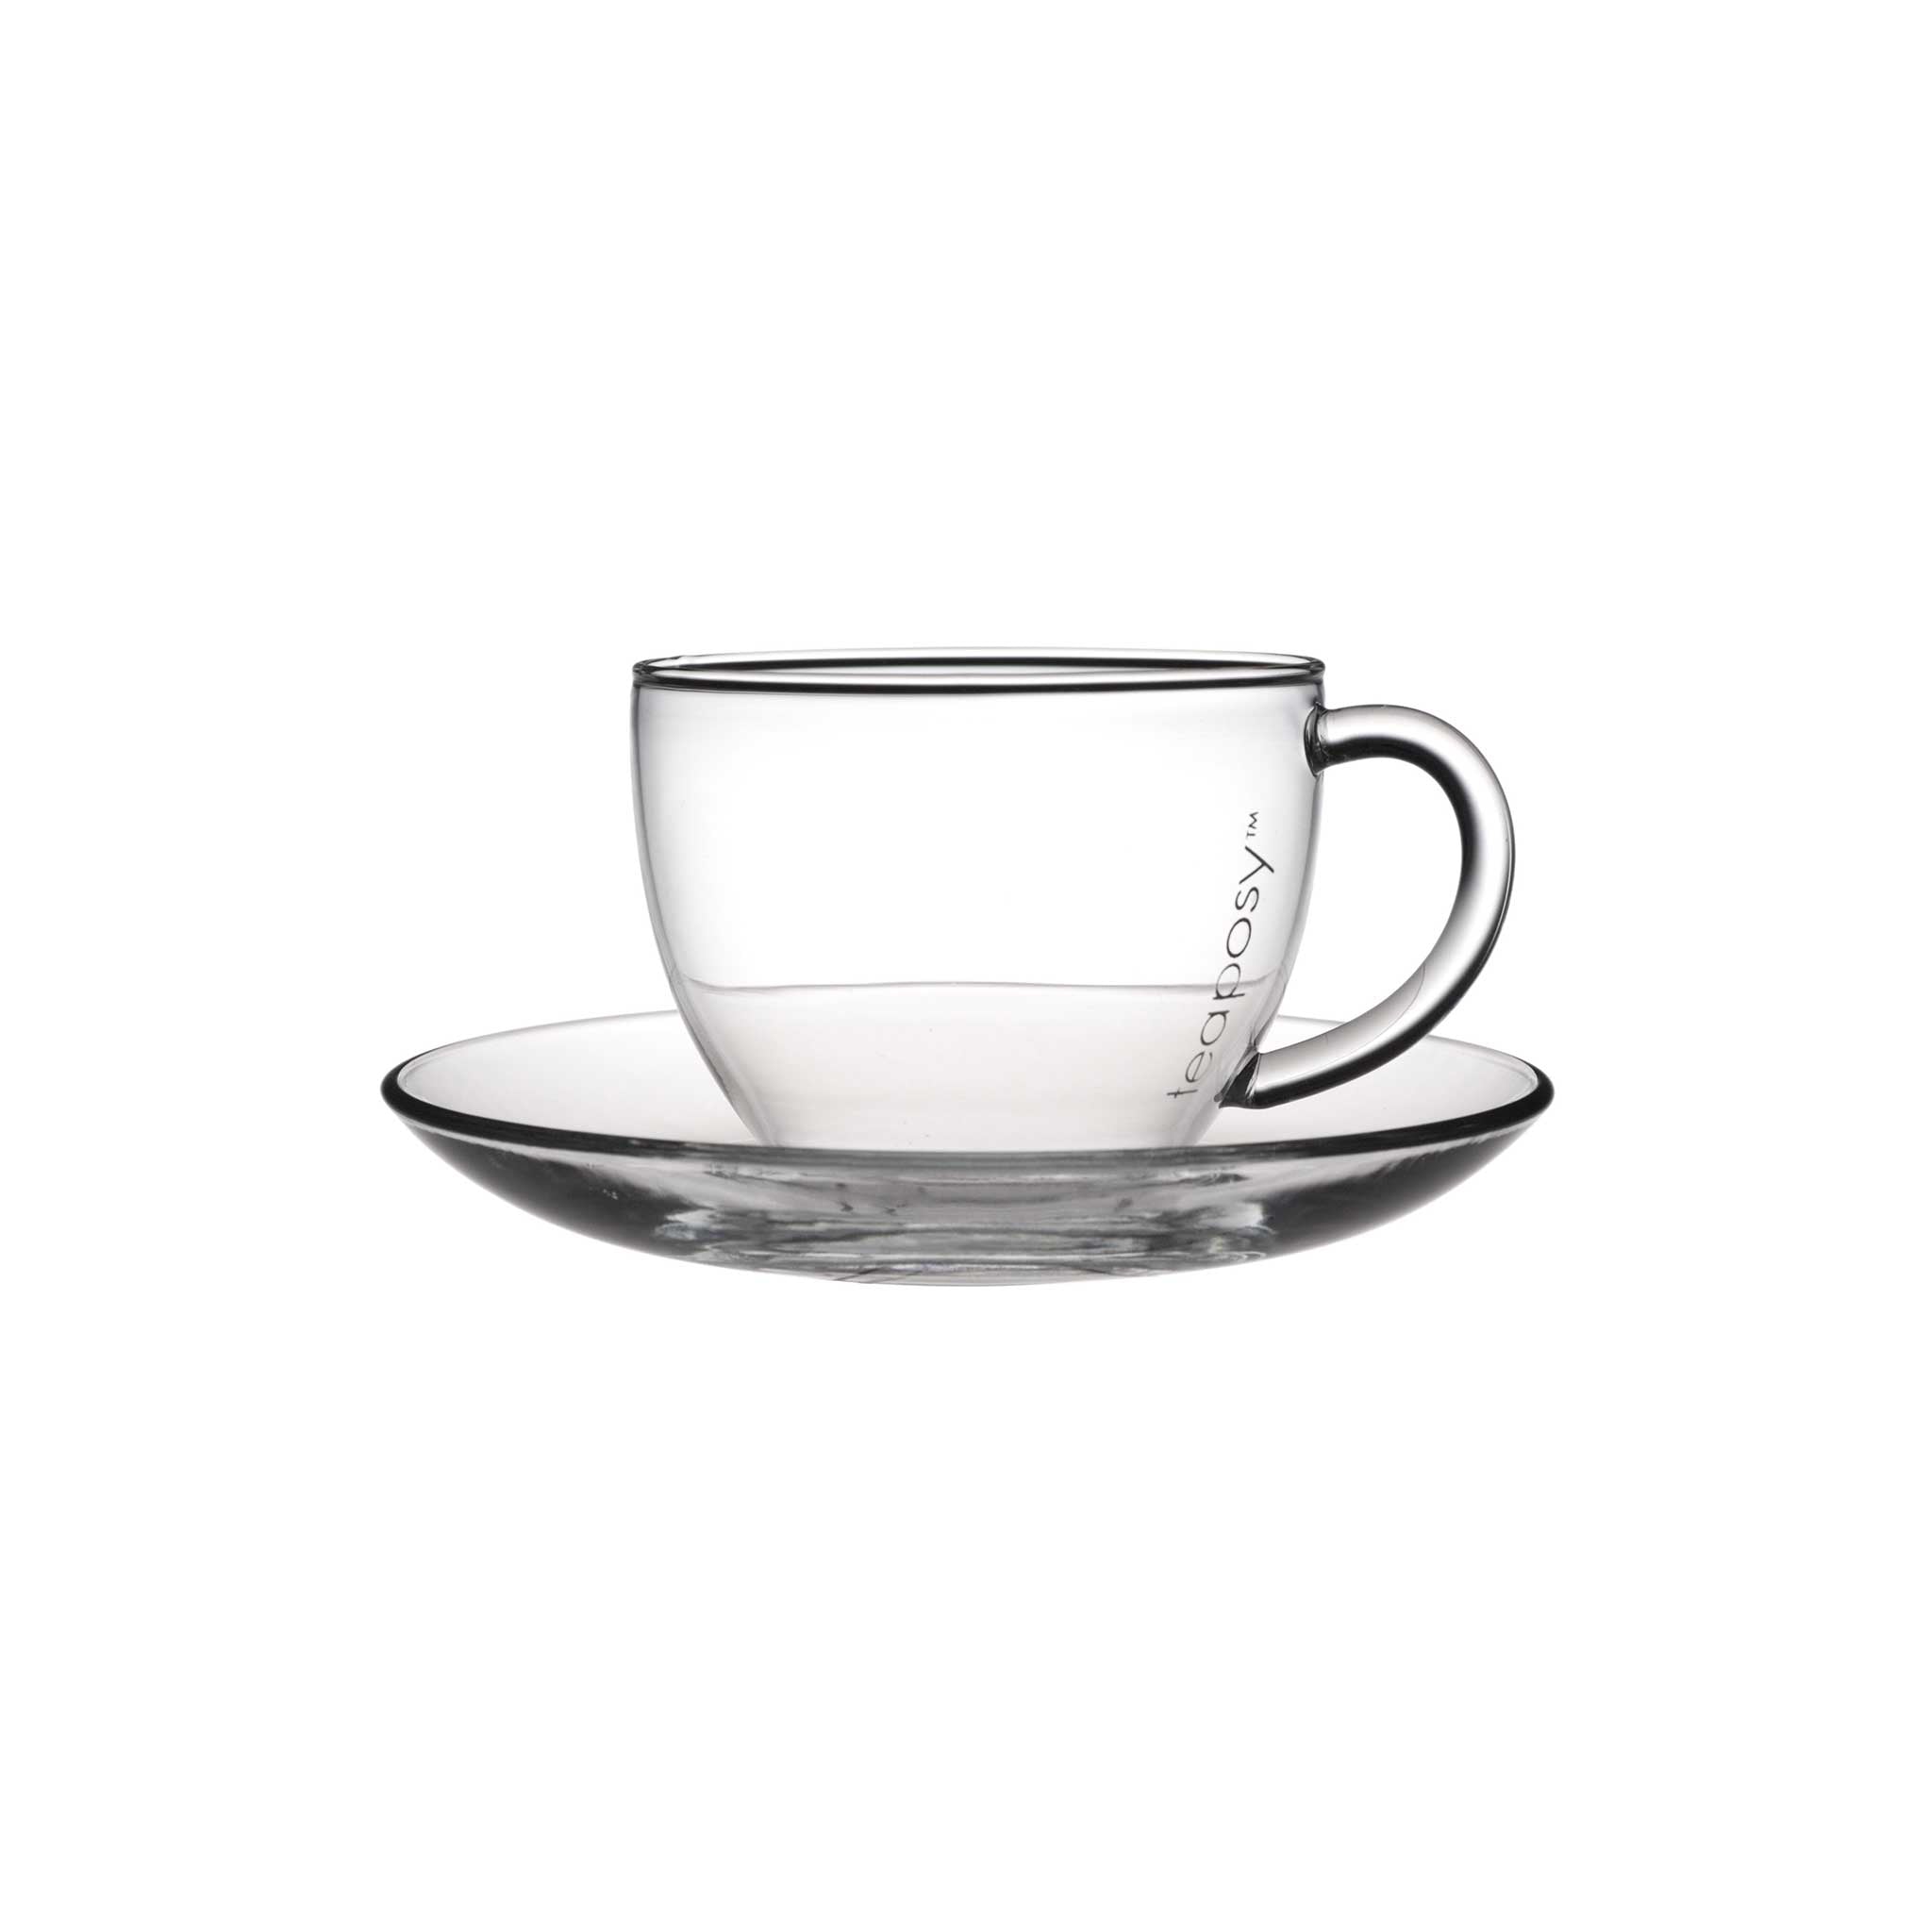 tea cup and saucer set of 6